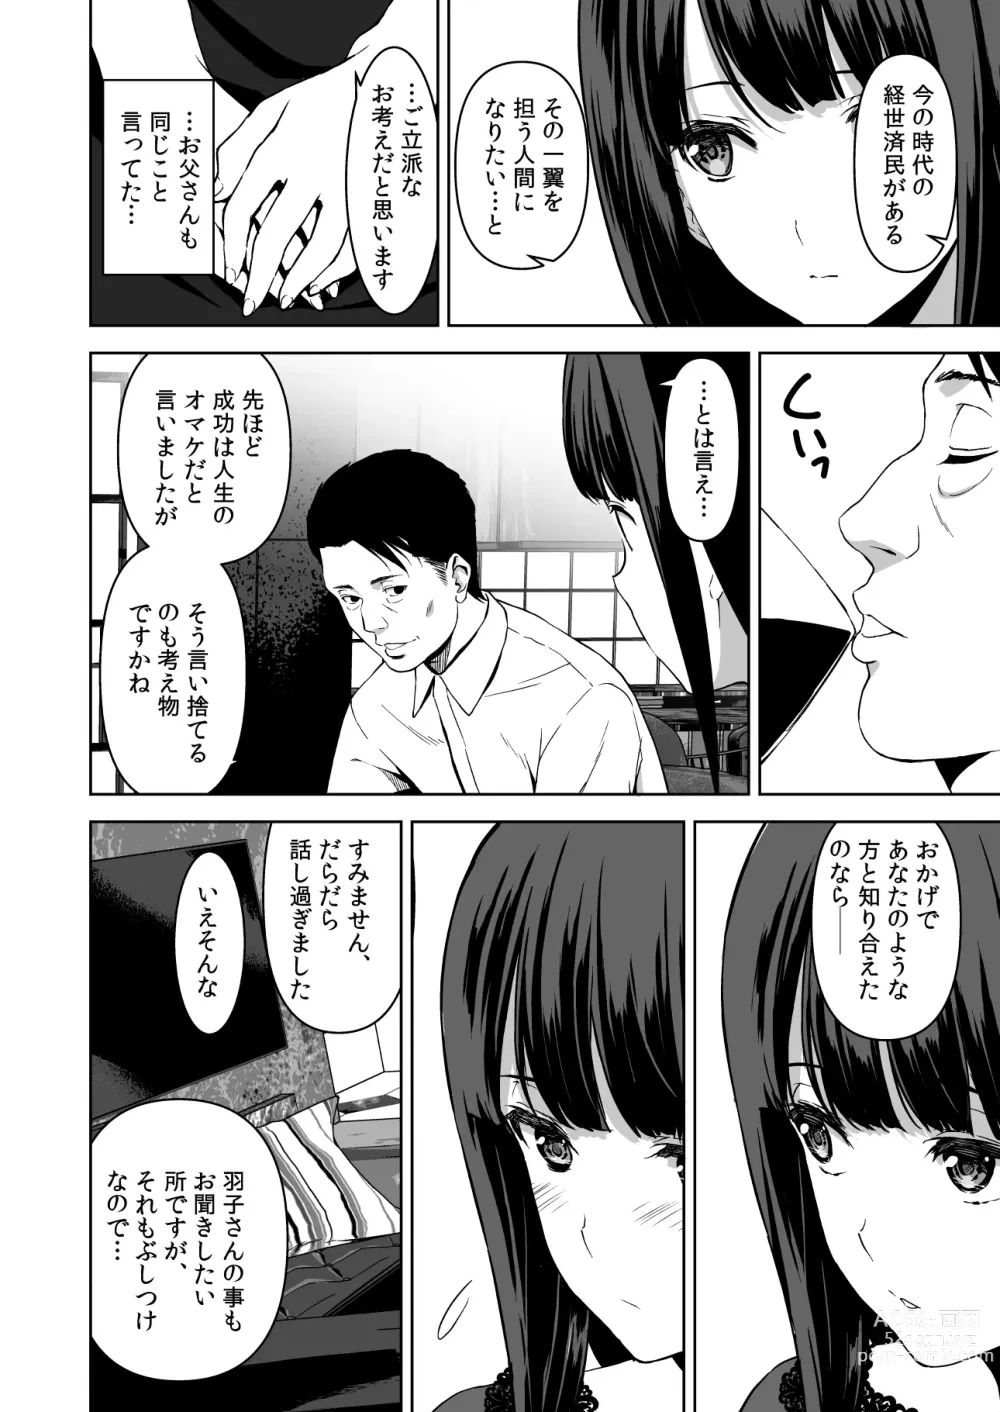 Page 13 of doujinshi Ane to Bitch no Hito ni wa Ienai Minatoku Tawaman Party Night